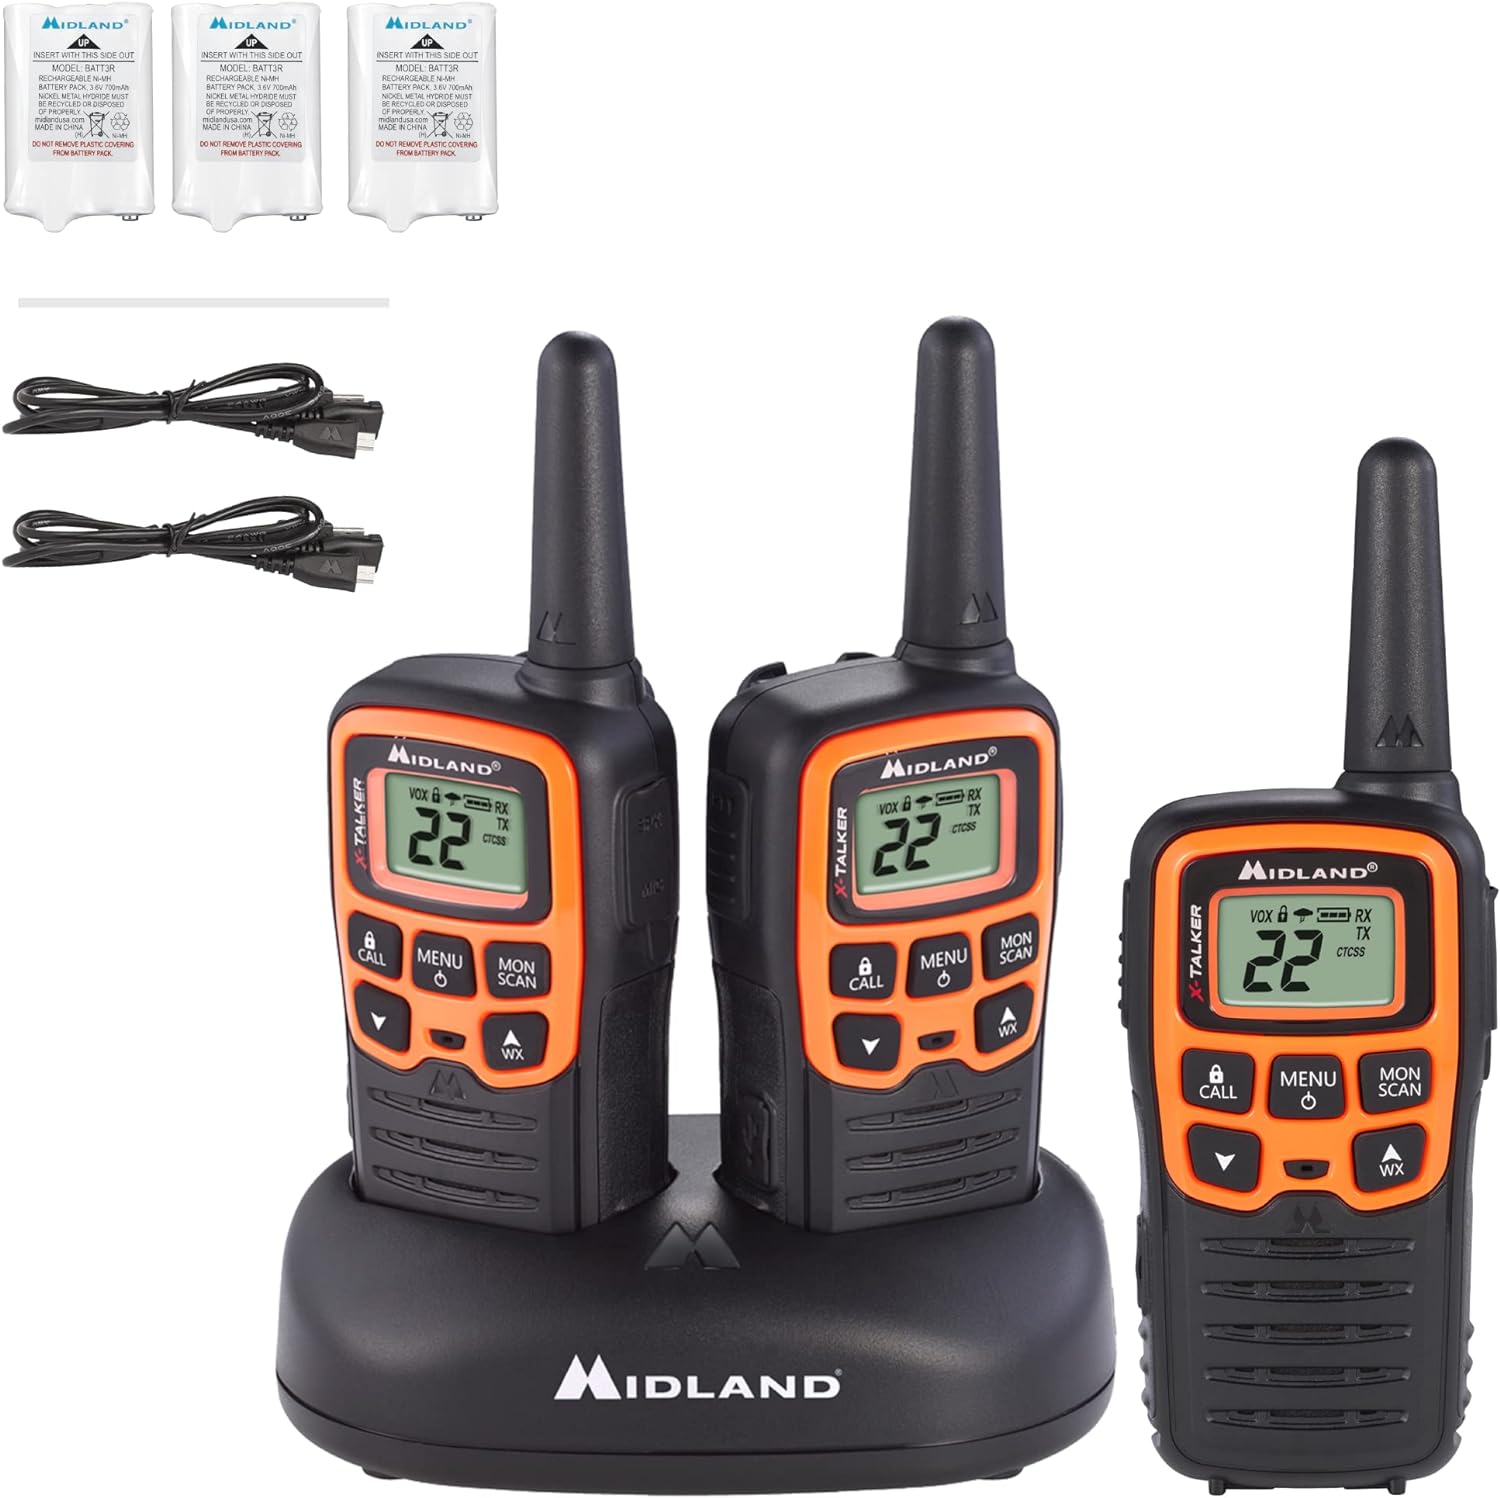 Midland - X-TALKER T51VP3, 22 canales FRS Radio bidireccional - Rango extendido, 38 códigos de privacidad, alerta meteorológica NOAA (paquete de 3) (negro/naranja)